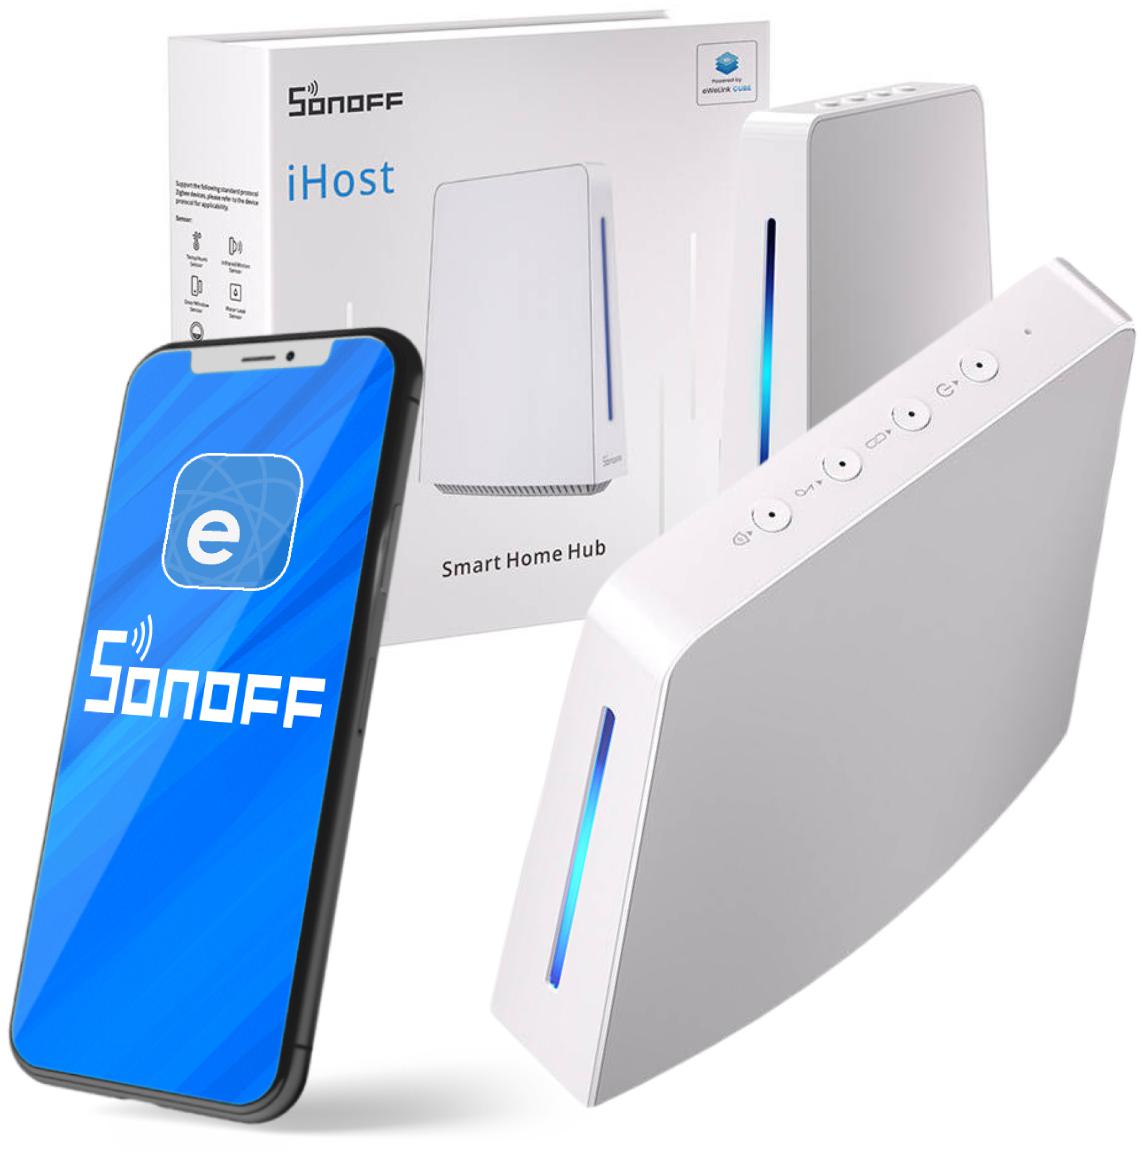 Sonoff iHost Smart Home Hub AIBridge-26 4GB RAM centrala Wi-Fi / ZigBee - najważniejsze cechy: